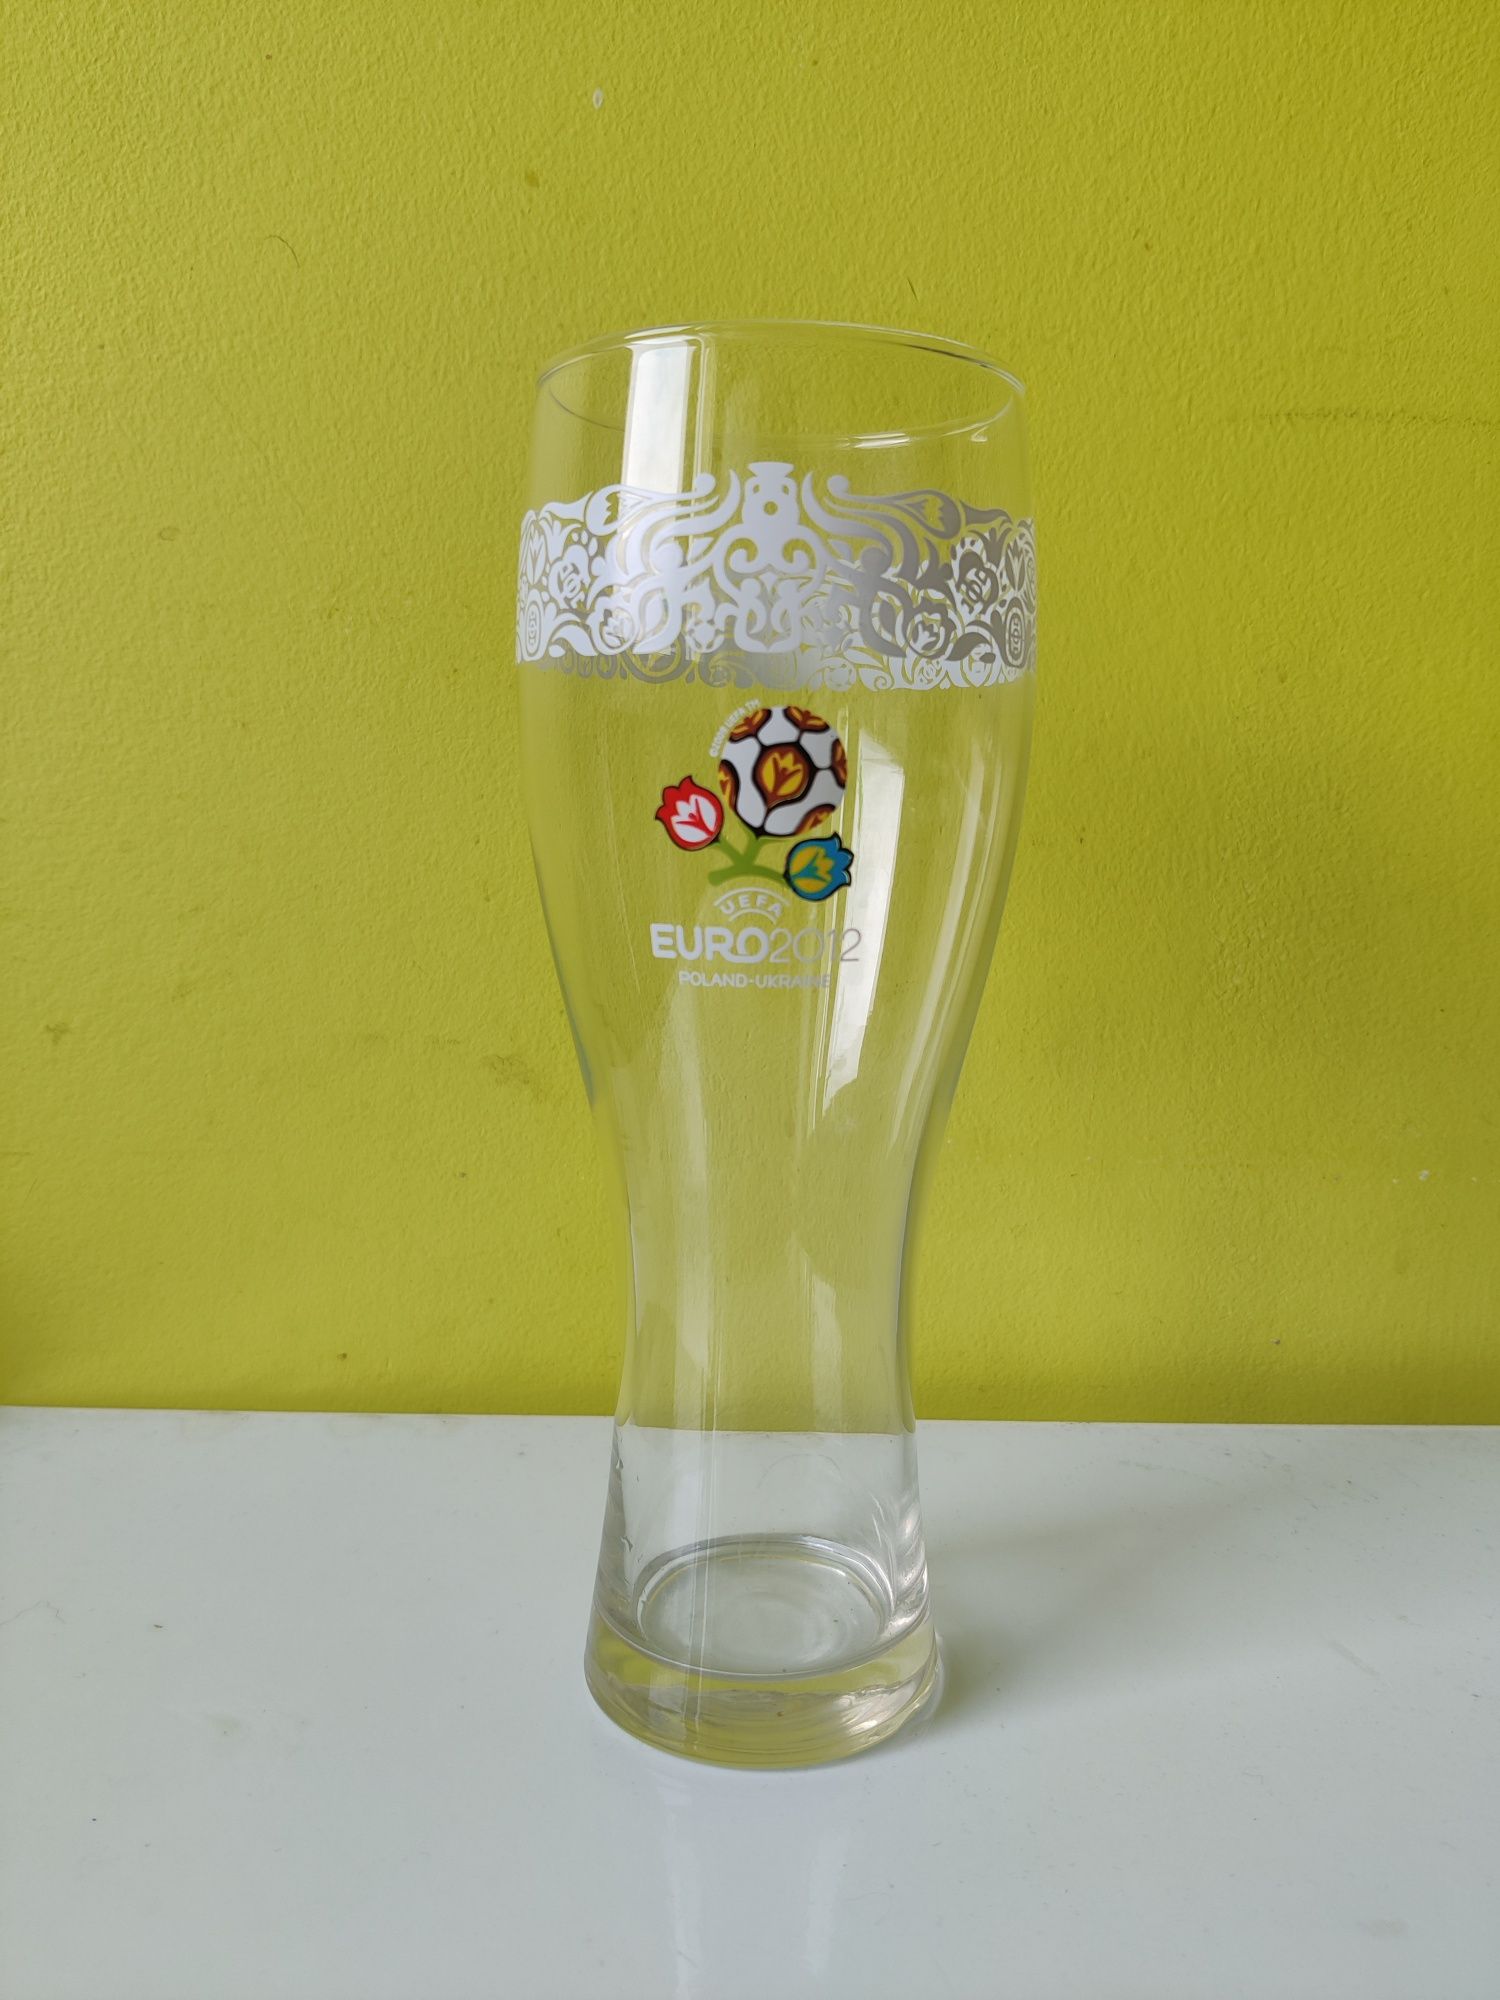 Kolekcjonerska szklanka kufel do piwa Euro 2012 limitowana edycja 0.5L